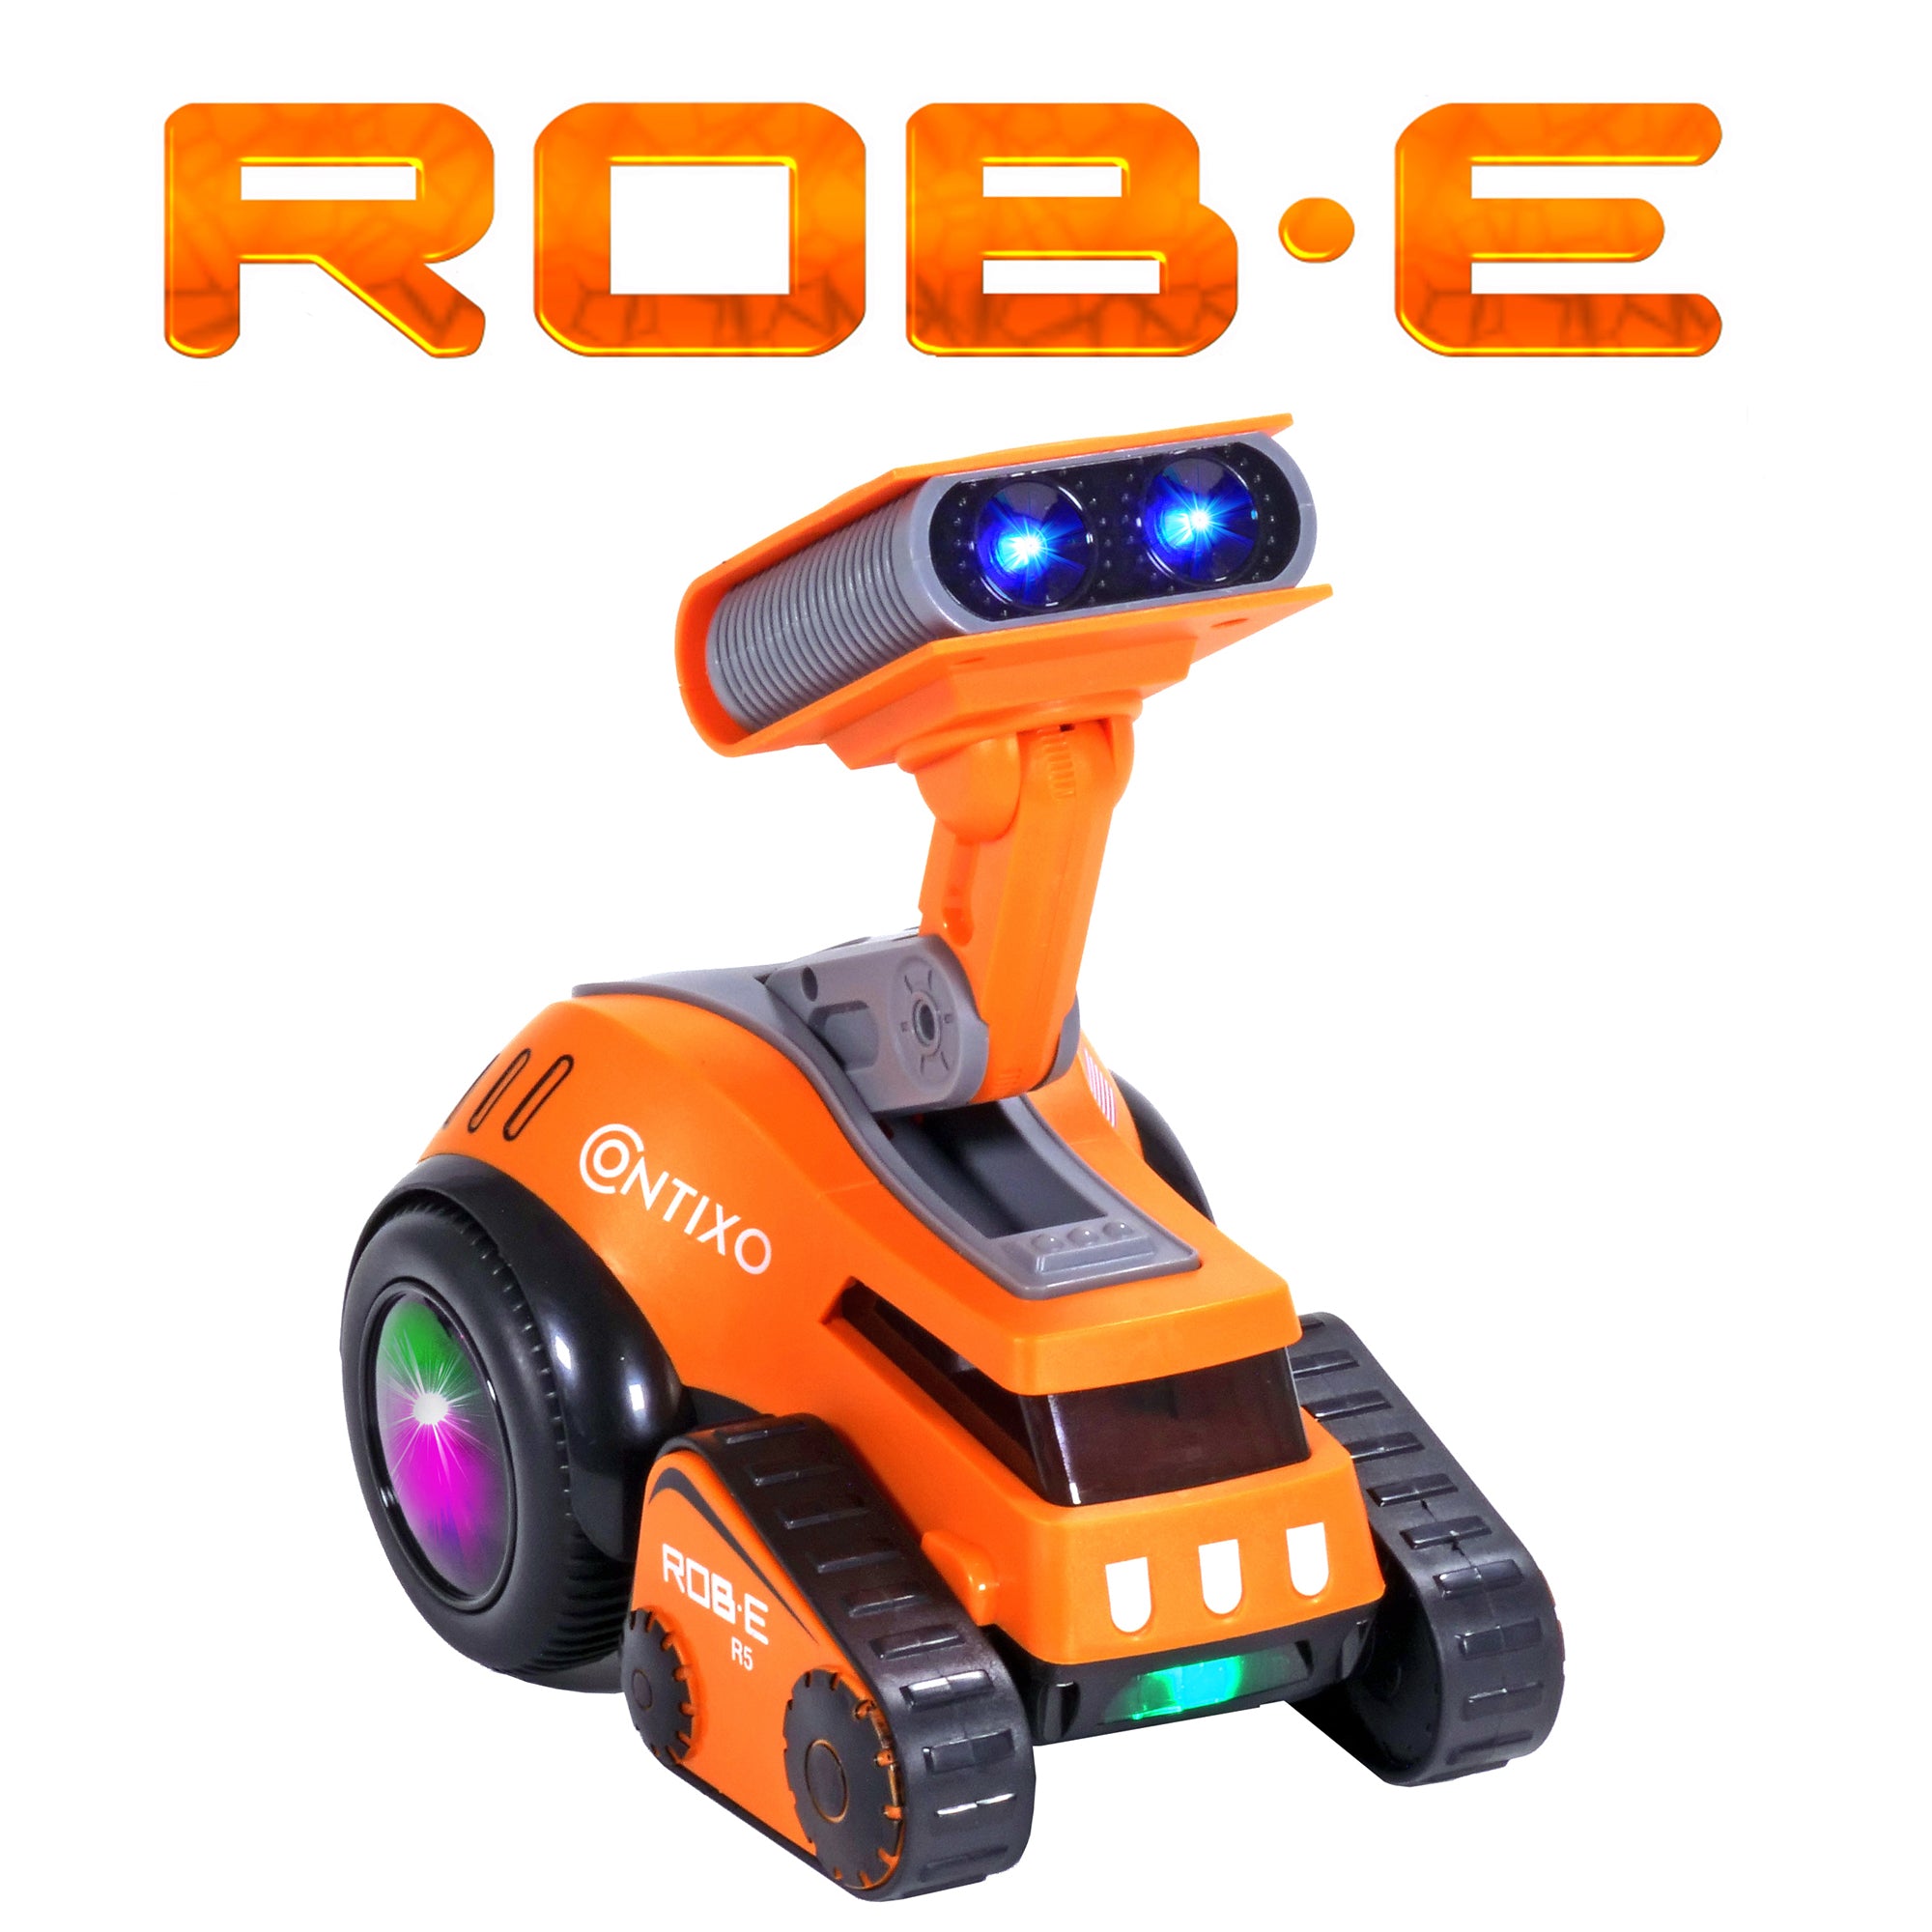 Contixo R5 Moon Rocket Rob-E Electronic Robot